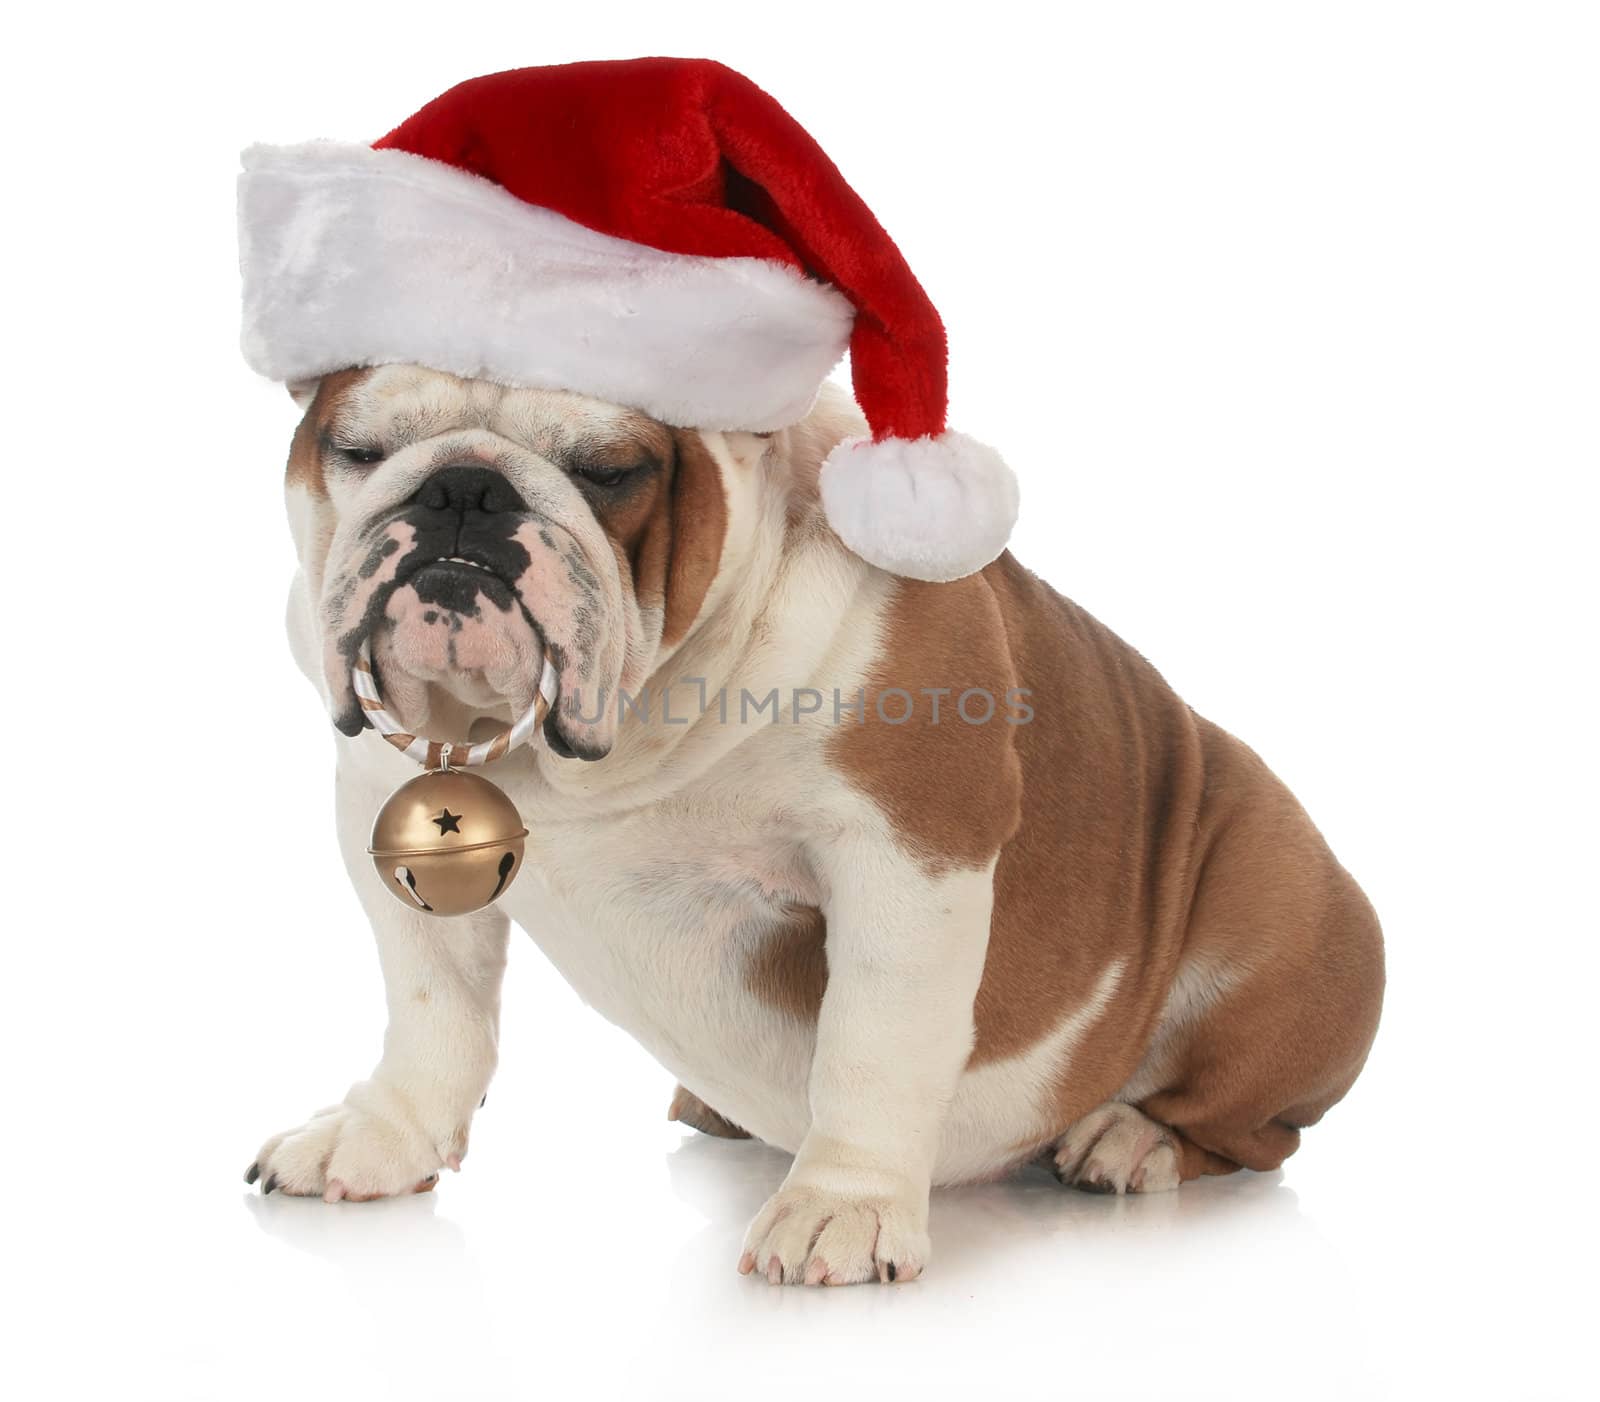 christmas dog - english bulldog wearing santa hat holding christmas bell on white background